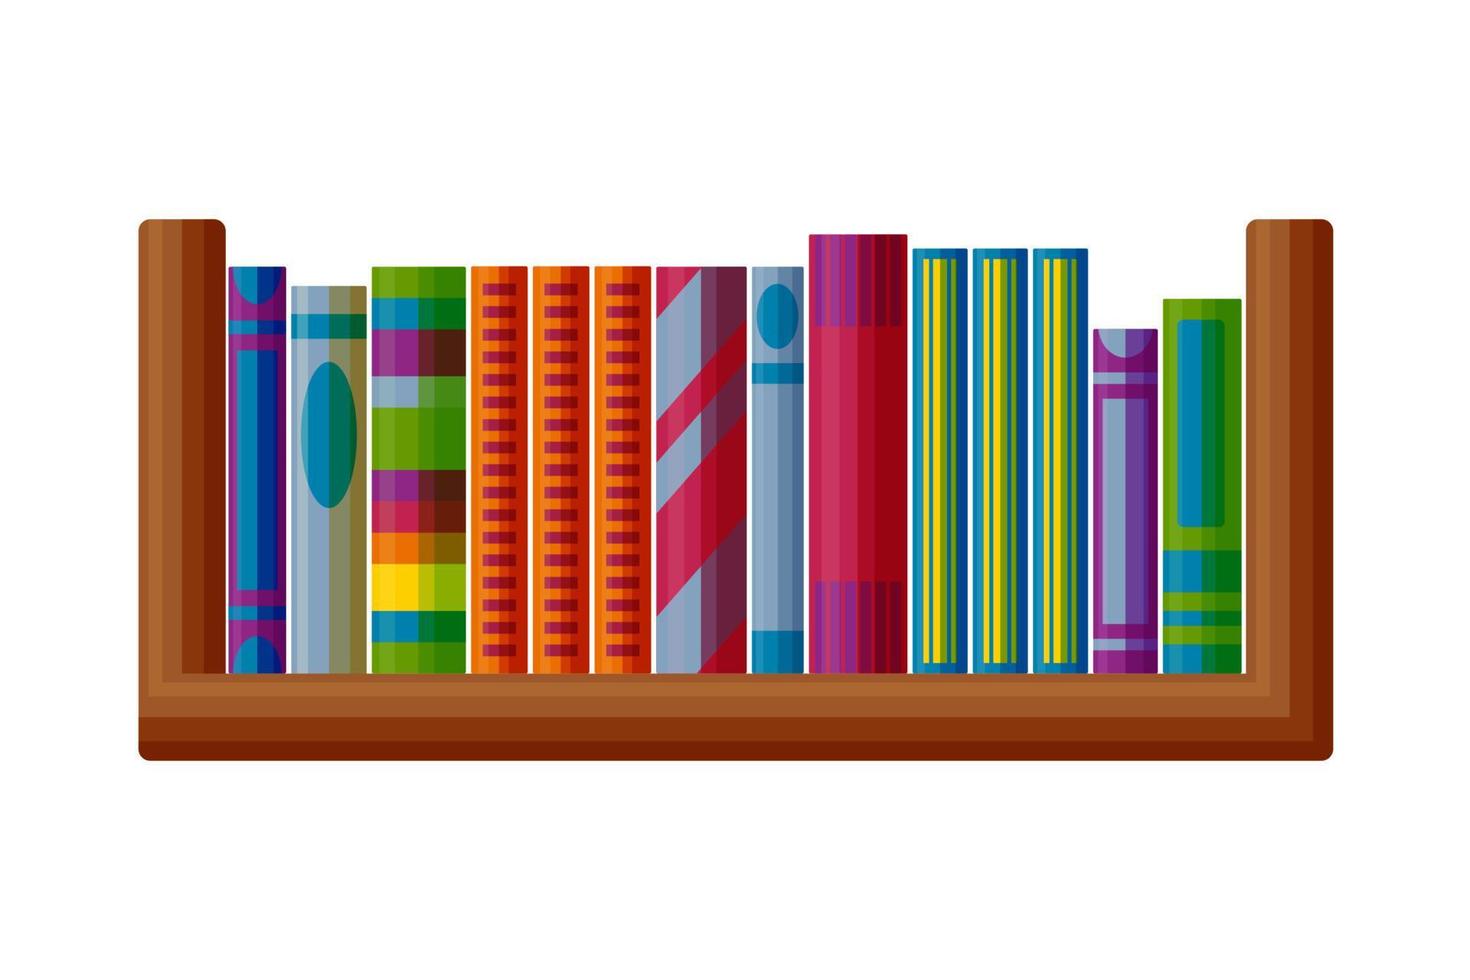 livres sur l'étagère en bois. étagère pour intérieurs en style cartoon. illustration vectorielle vecteur